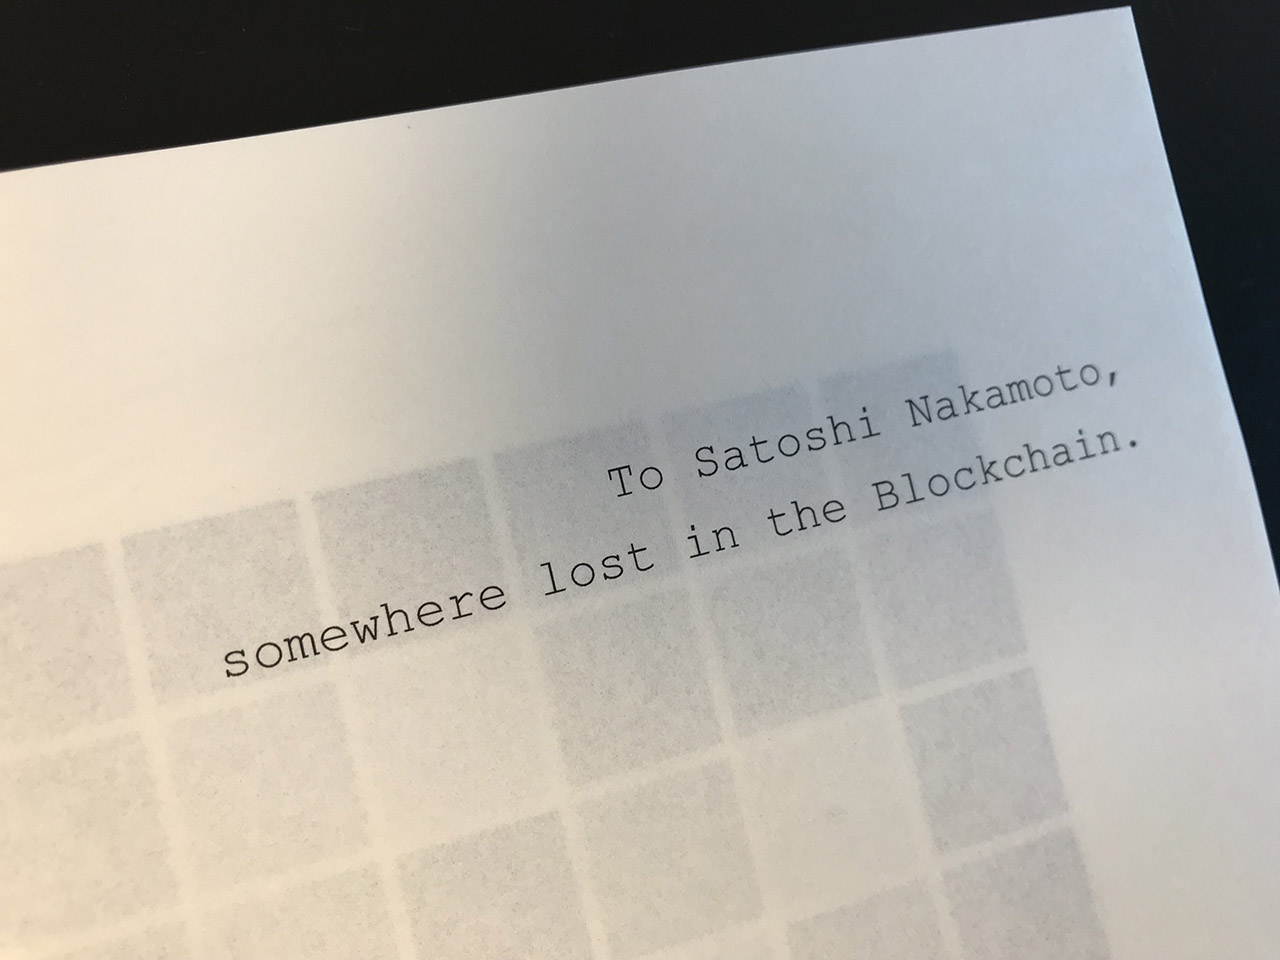 Bitcoin blockchain first blocks